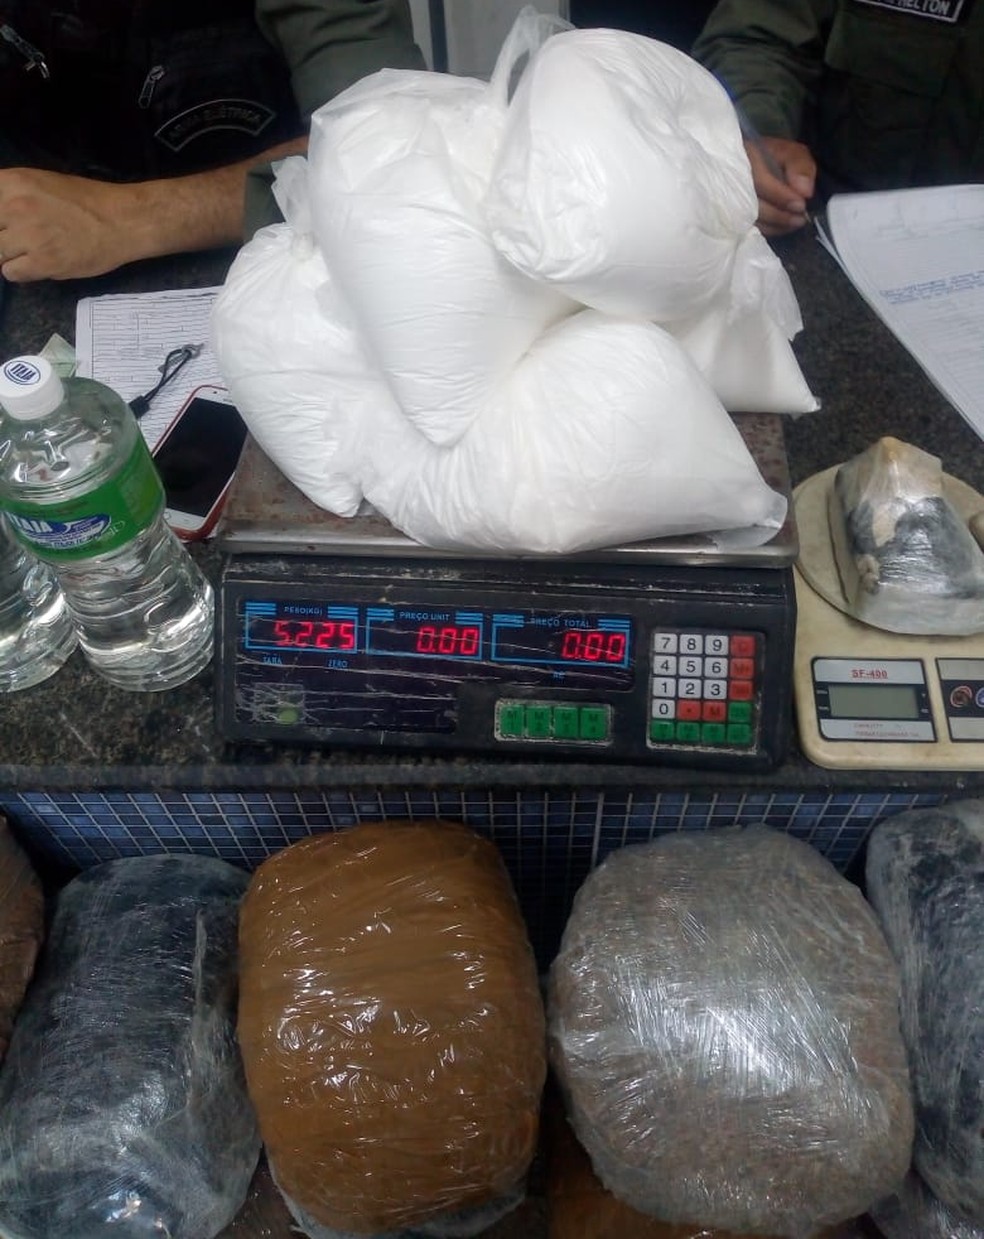 Cocaína e maconha foram apreendidas em ação da PM na Iputinga, no Recife — Foto: Polícia Militar/Divulgação